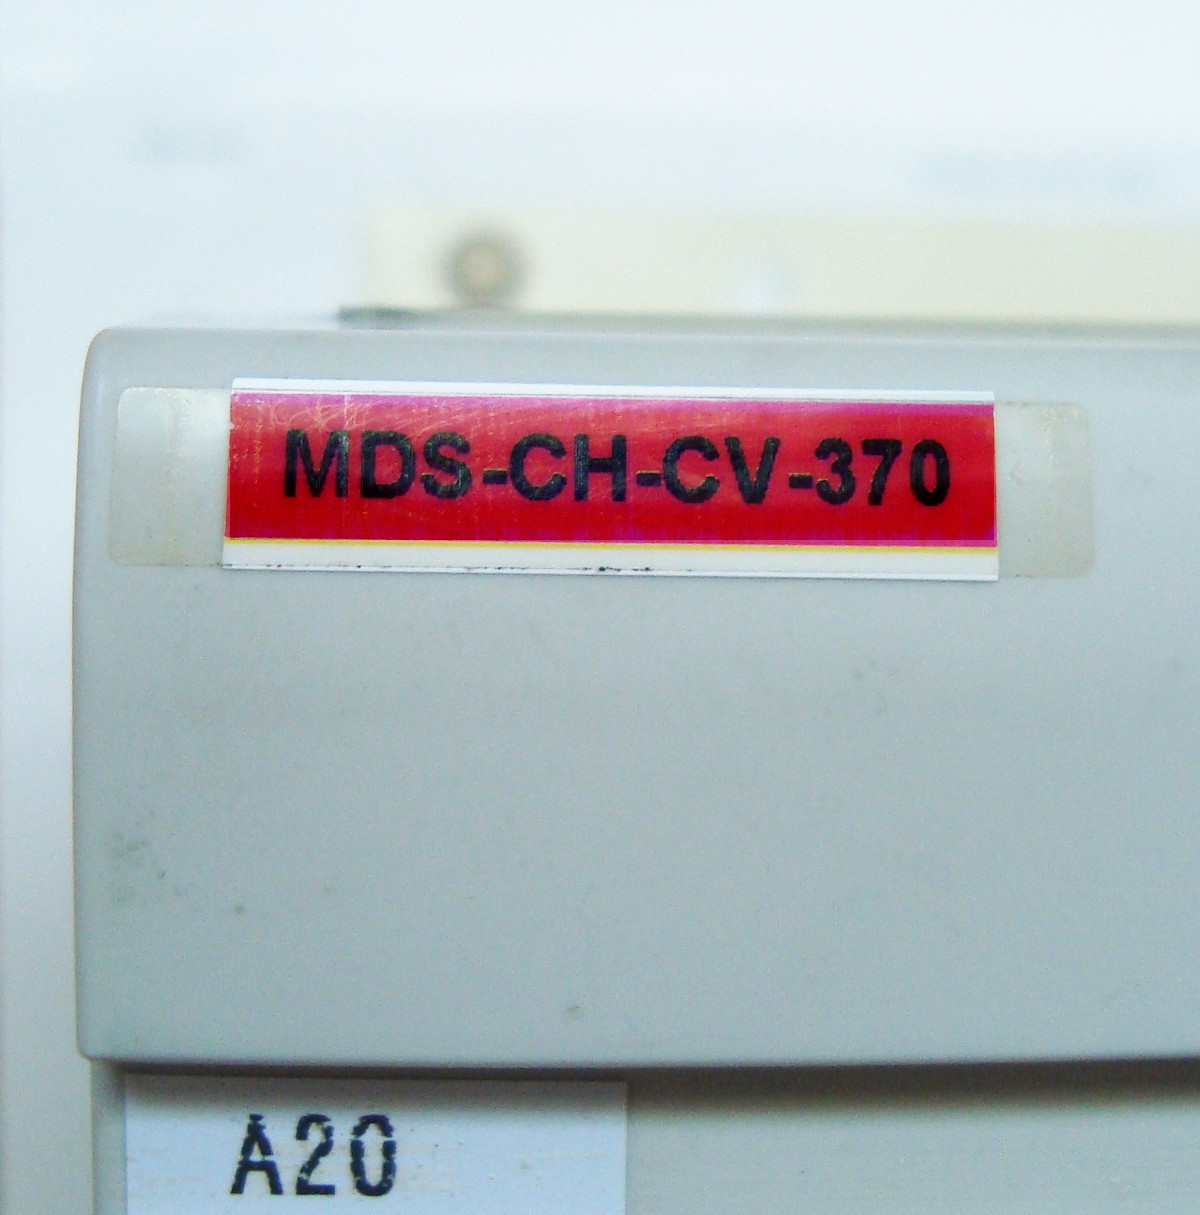 5 Typenschild Mds-ch-cv-370